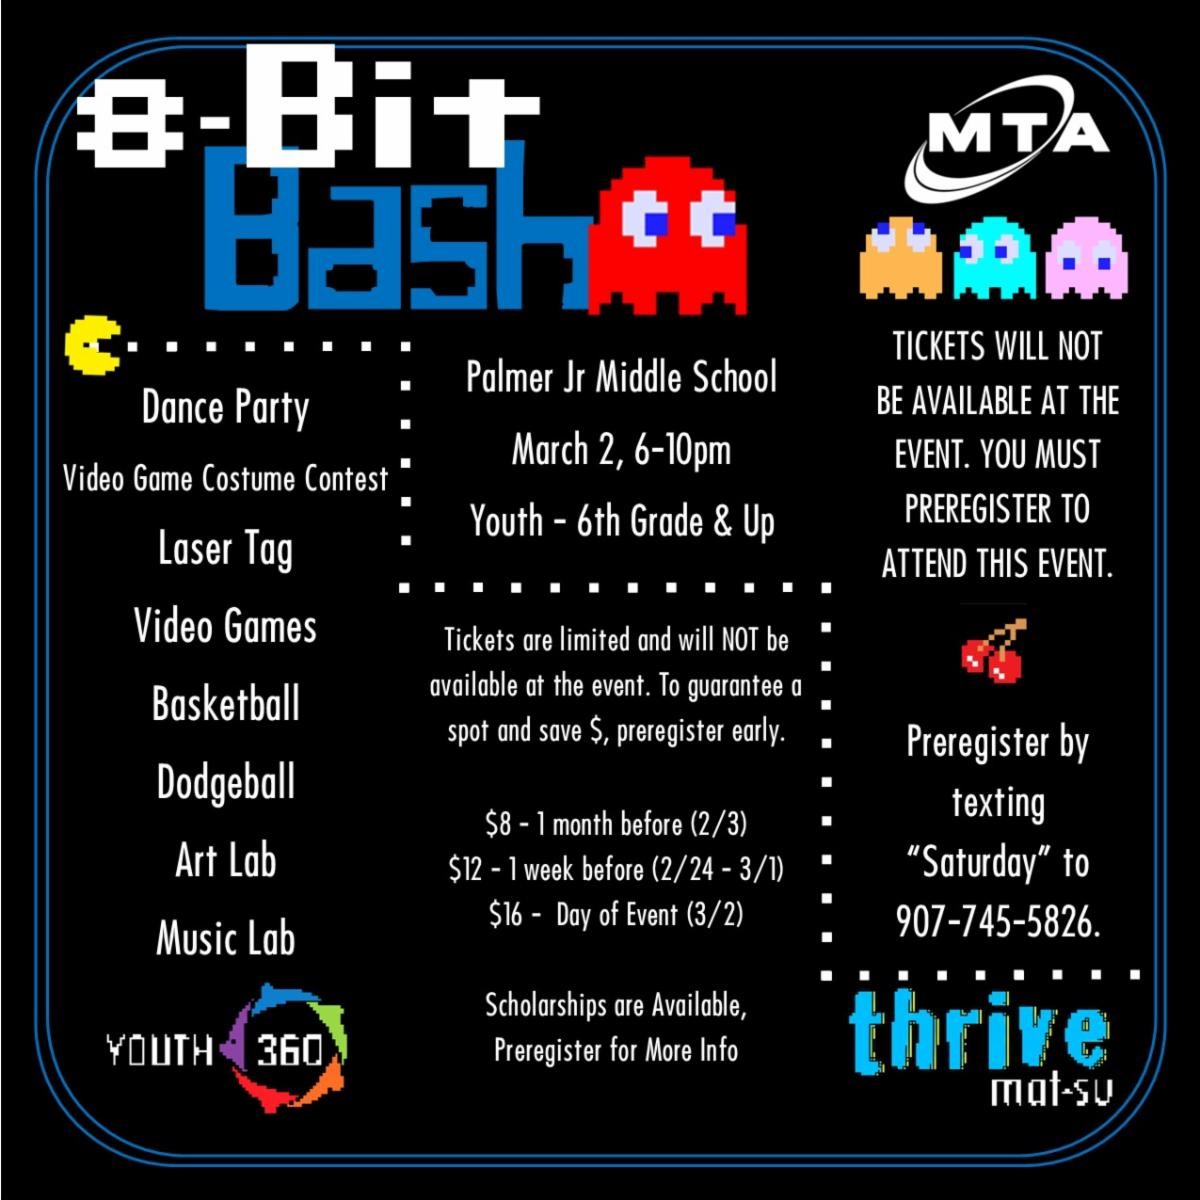 8-Bit Bash Dance Party